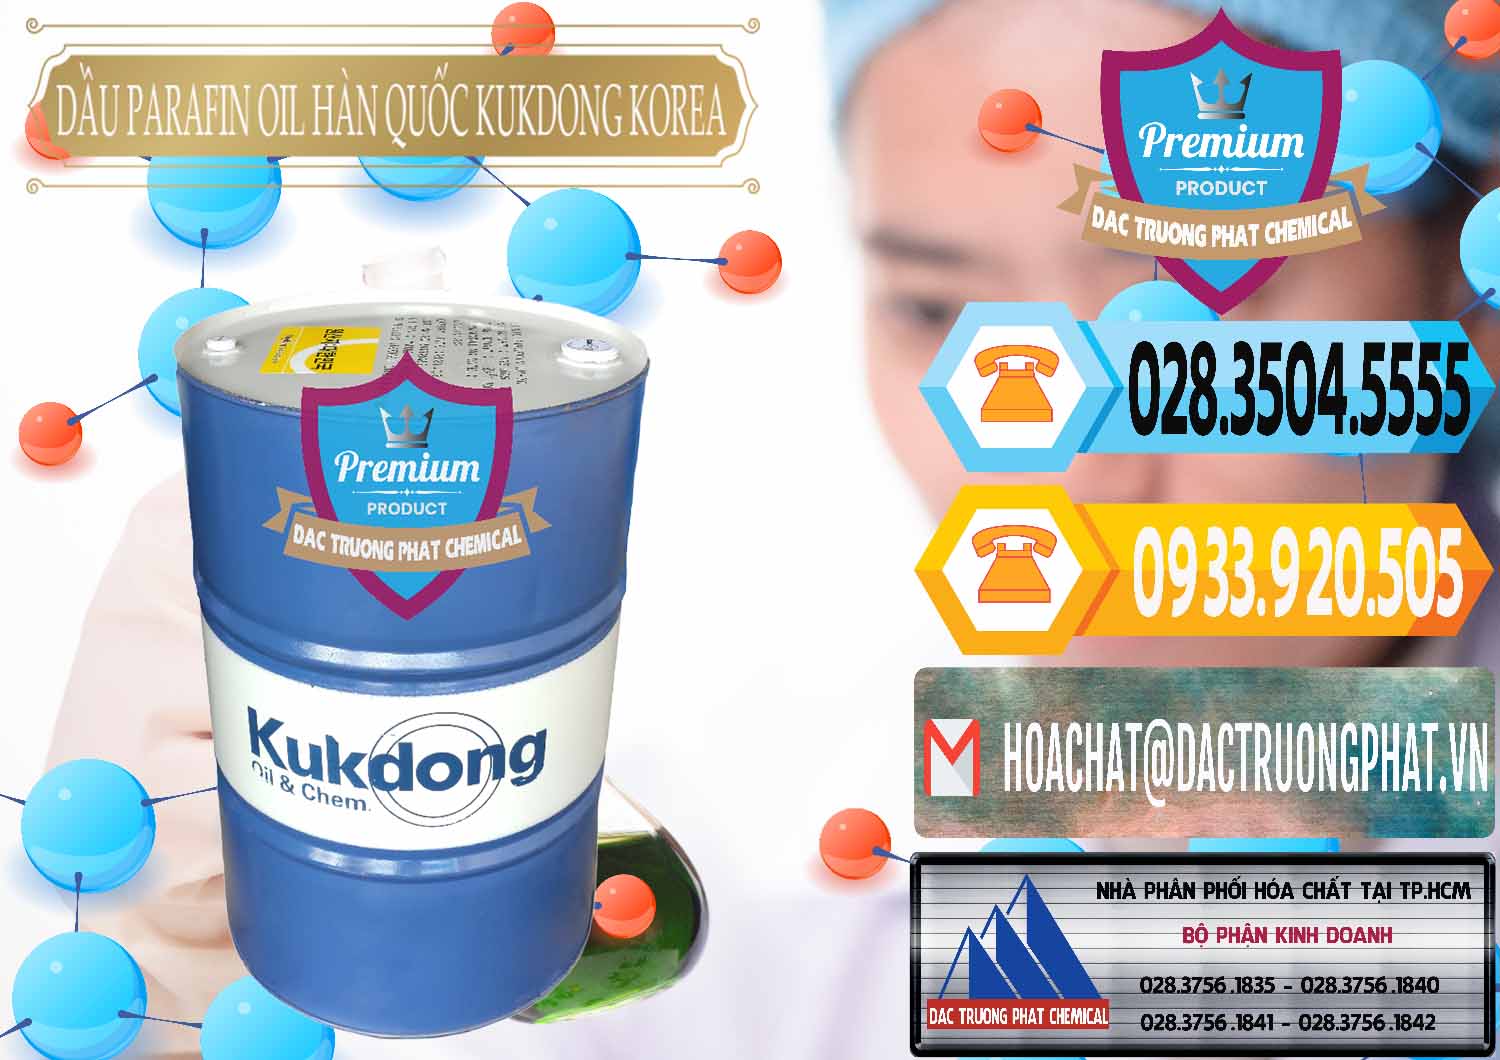 Công ty bán _ phân phối Dầu Parafin Oil Hàn Quốc Korea Kukdong - 0060 - Nhà cung cấp và kinh doanh hóa chất tại TP.HCM - hoachattayrua.net